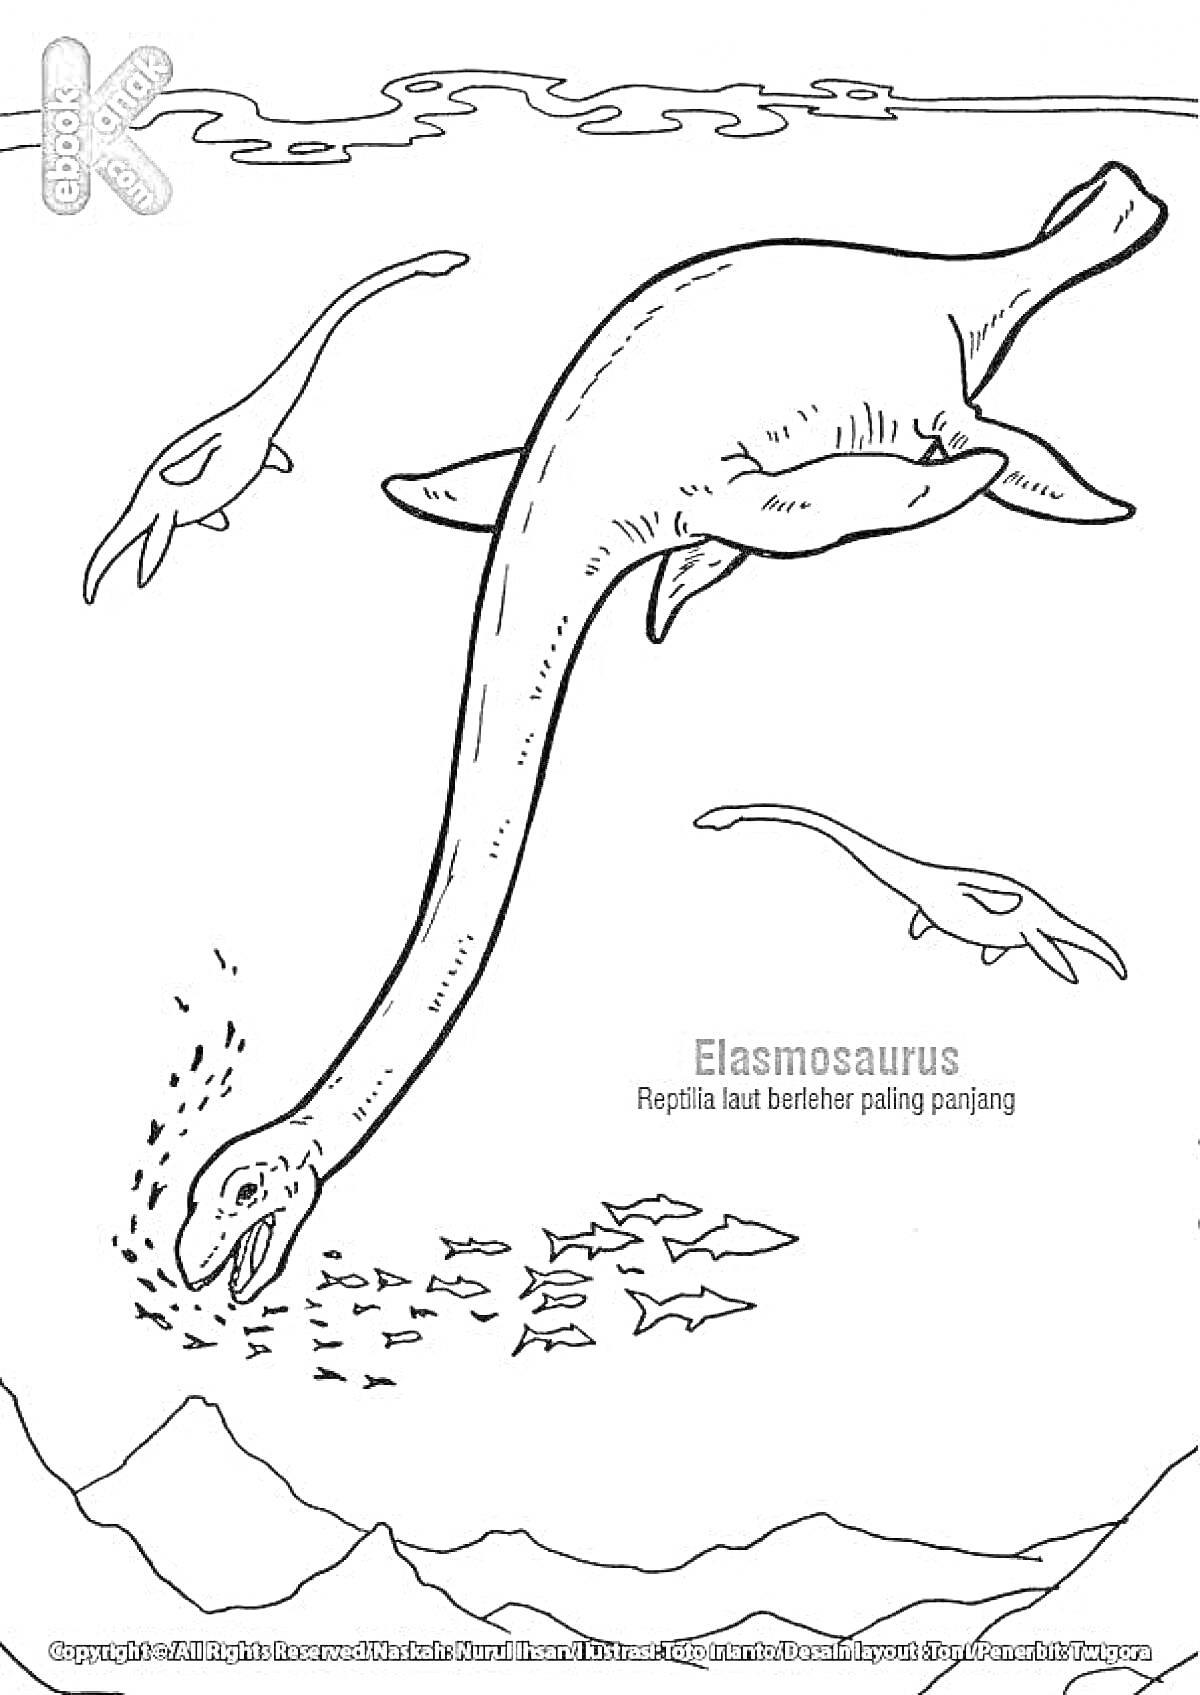 Раскраска Эласмозавр плавает в море с рыбами и другой морской живностью на фоне гор и облаков.